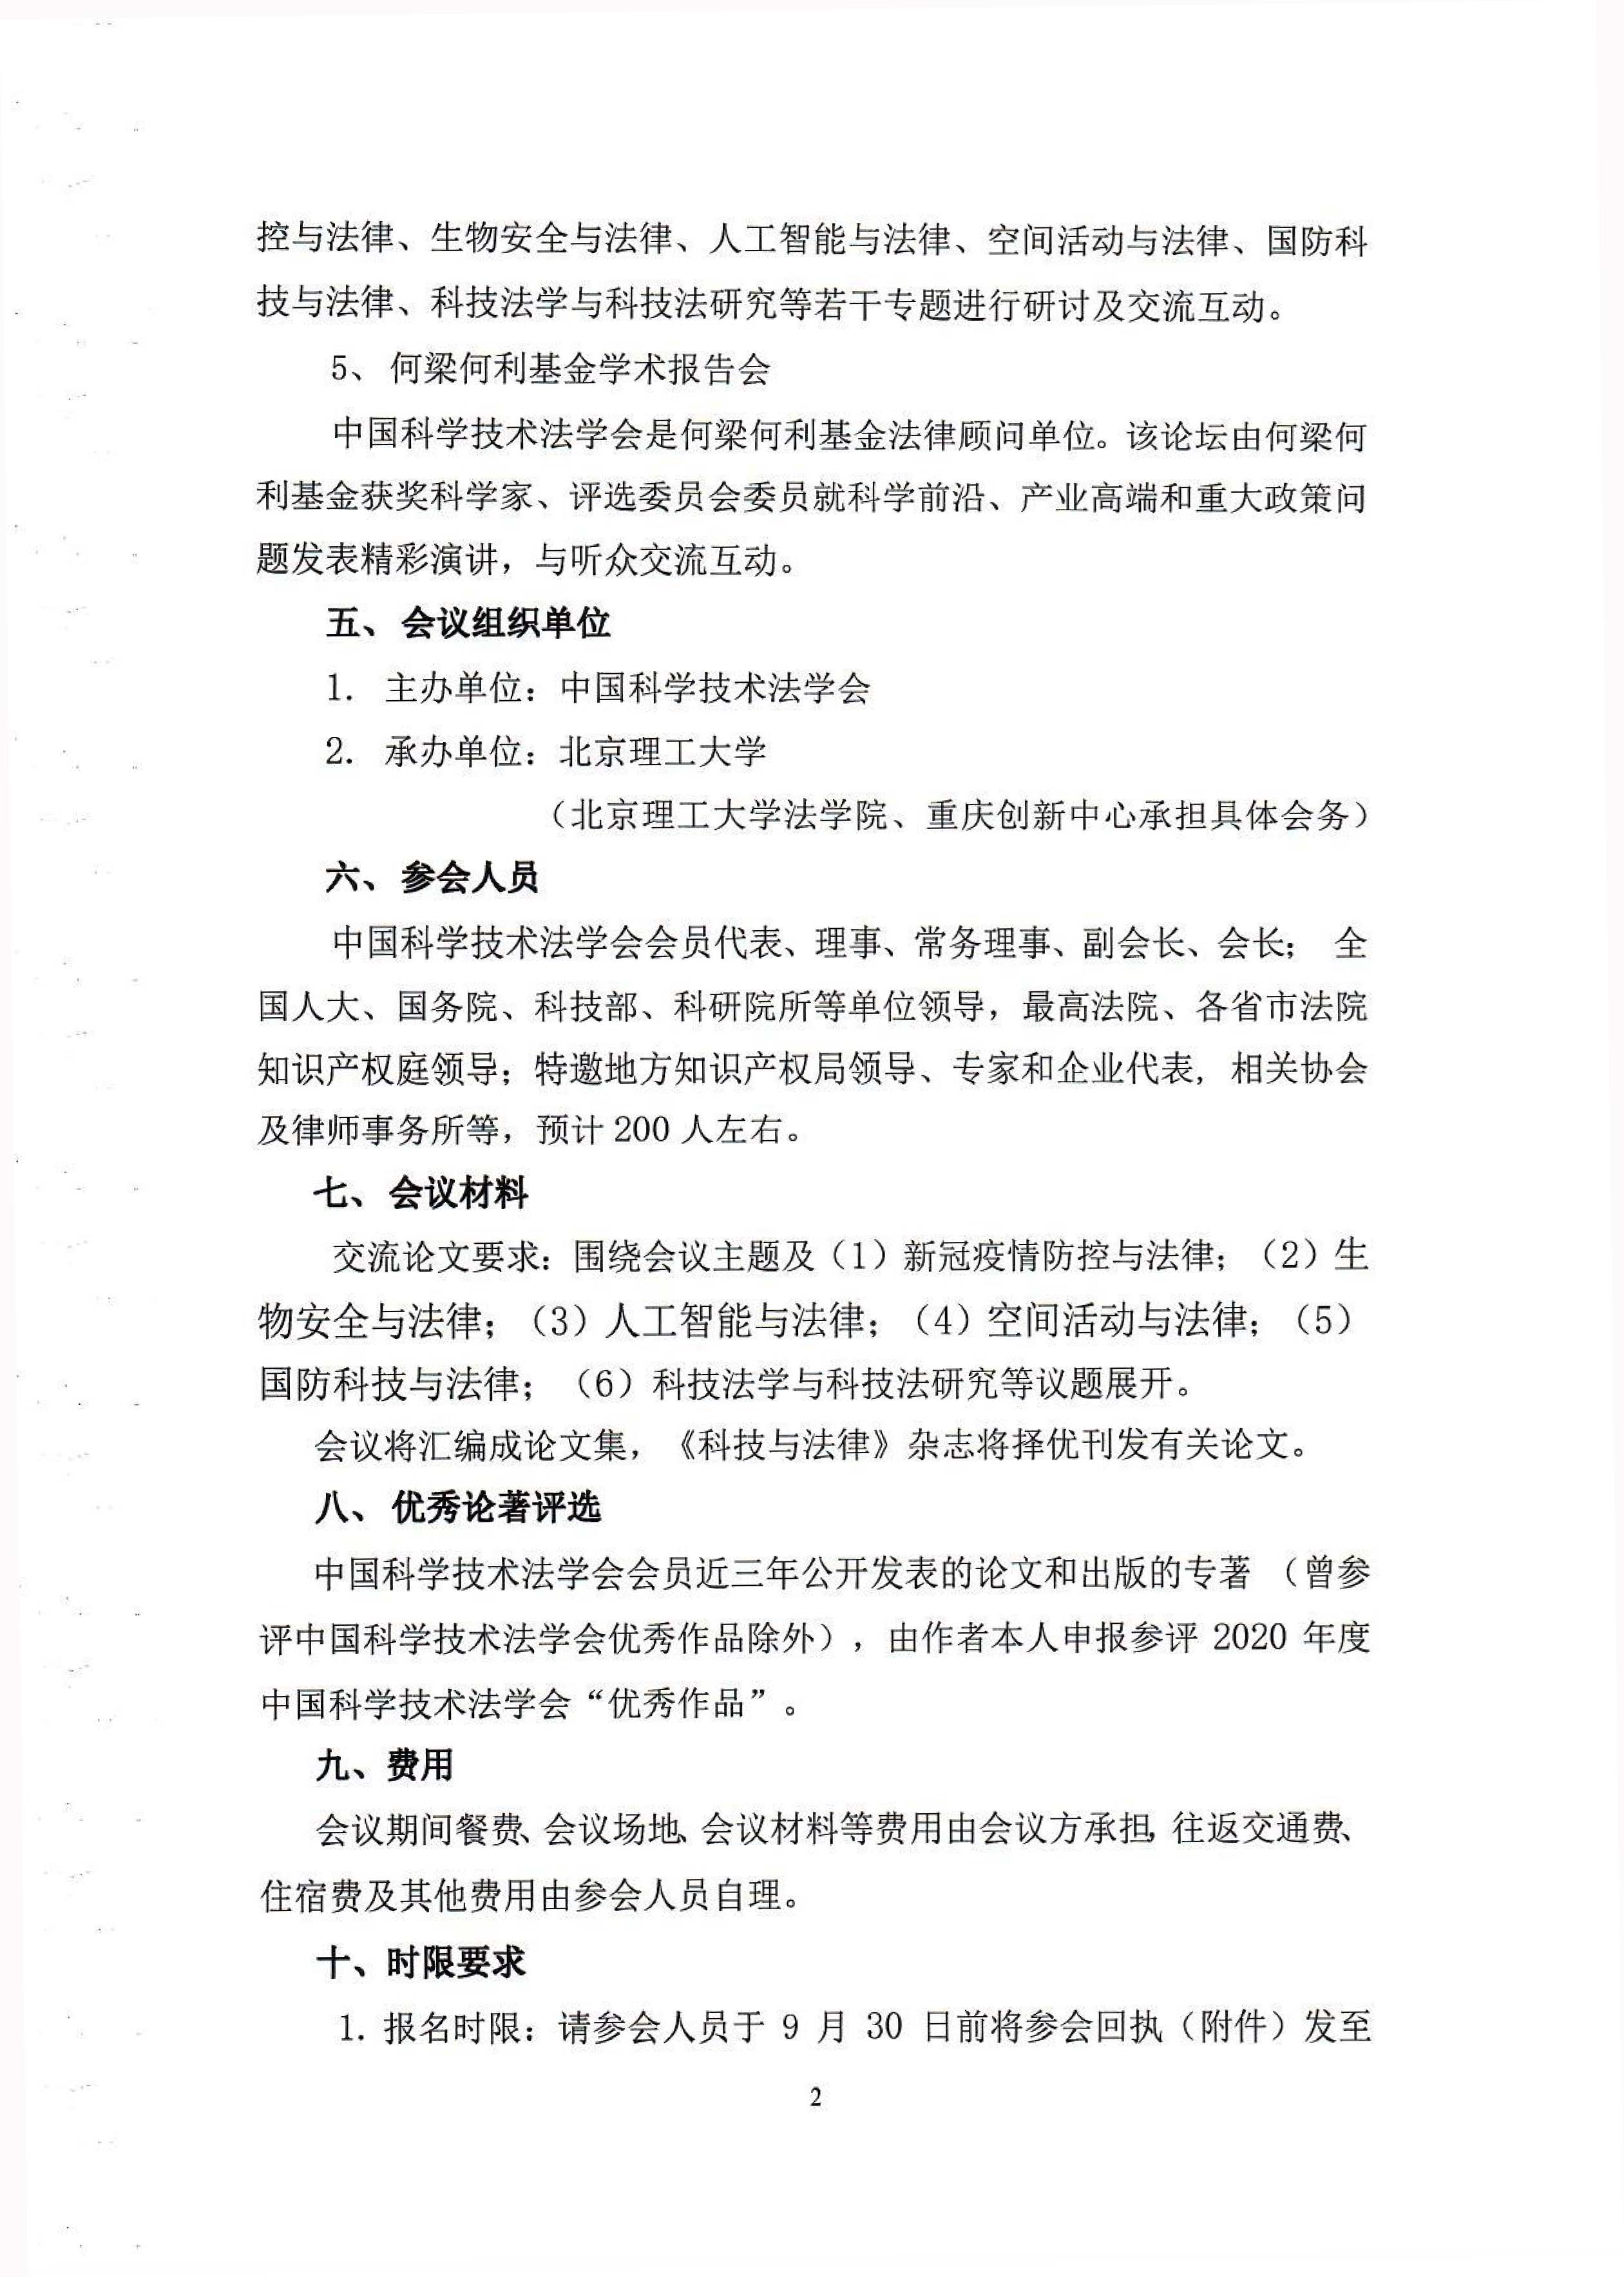 中国科学技术法学会2020年年会预通知-2.jpg